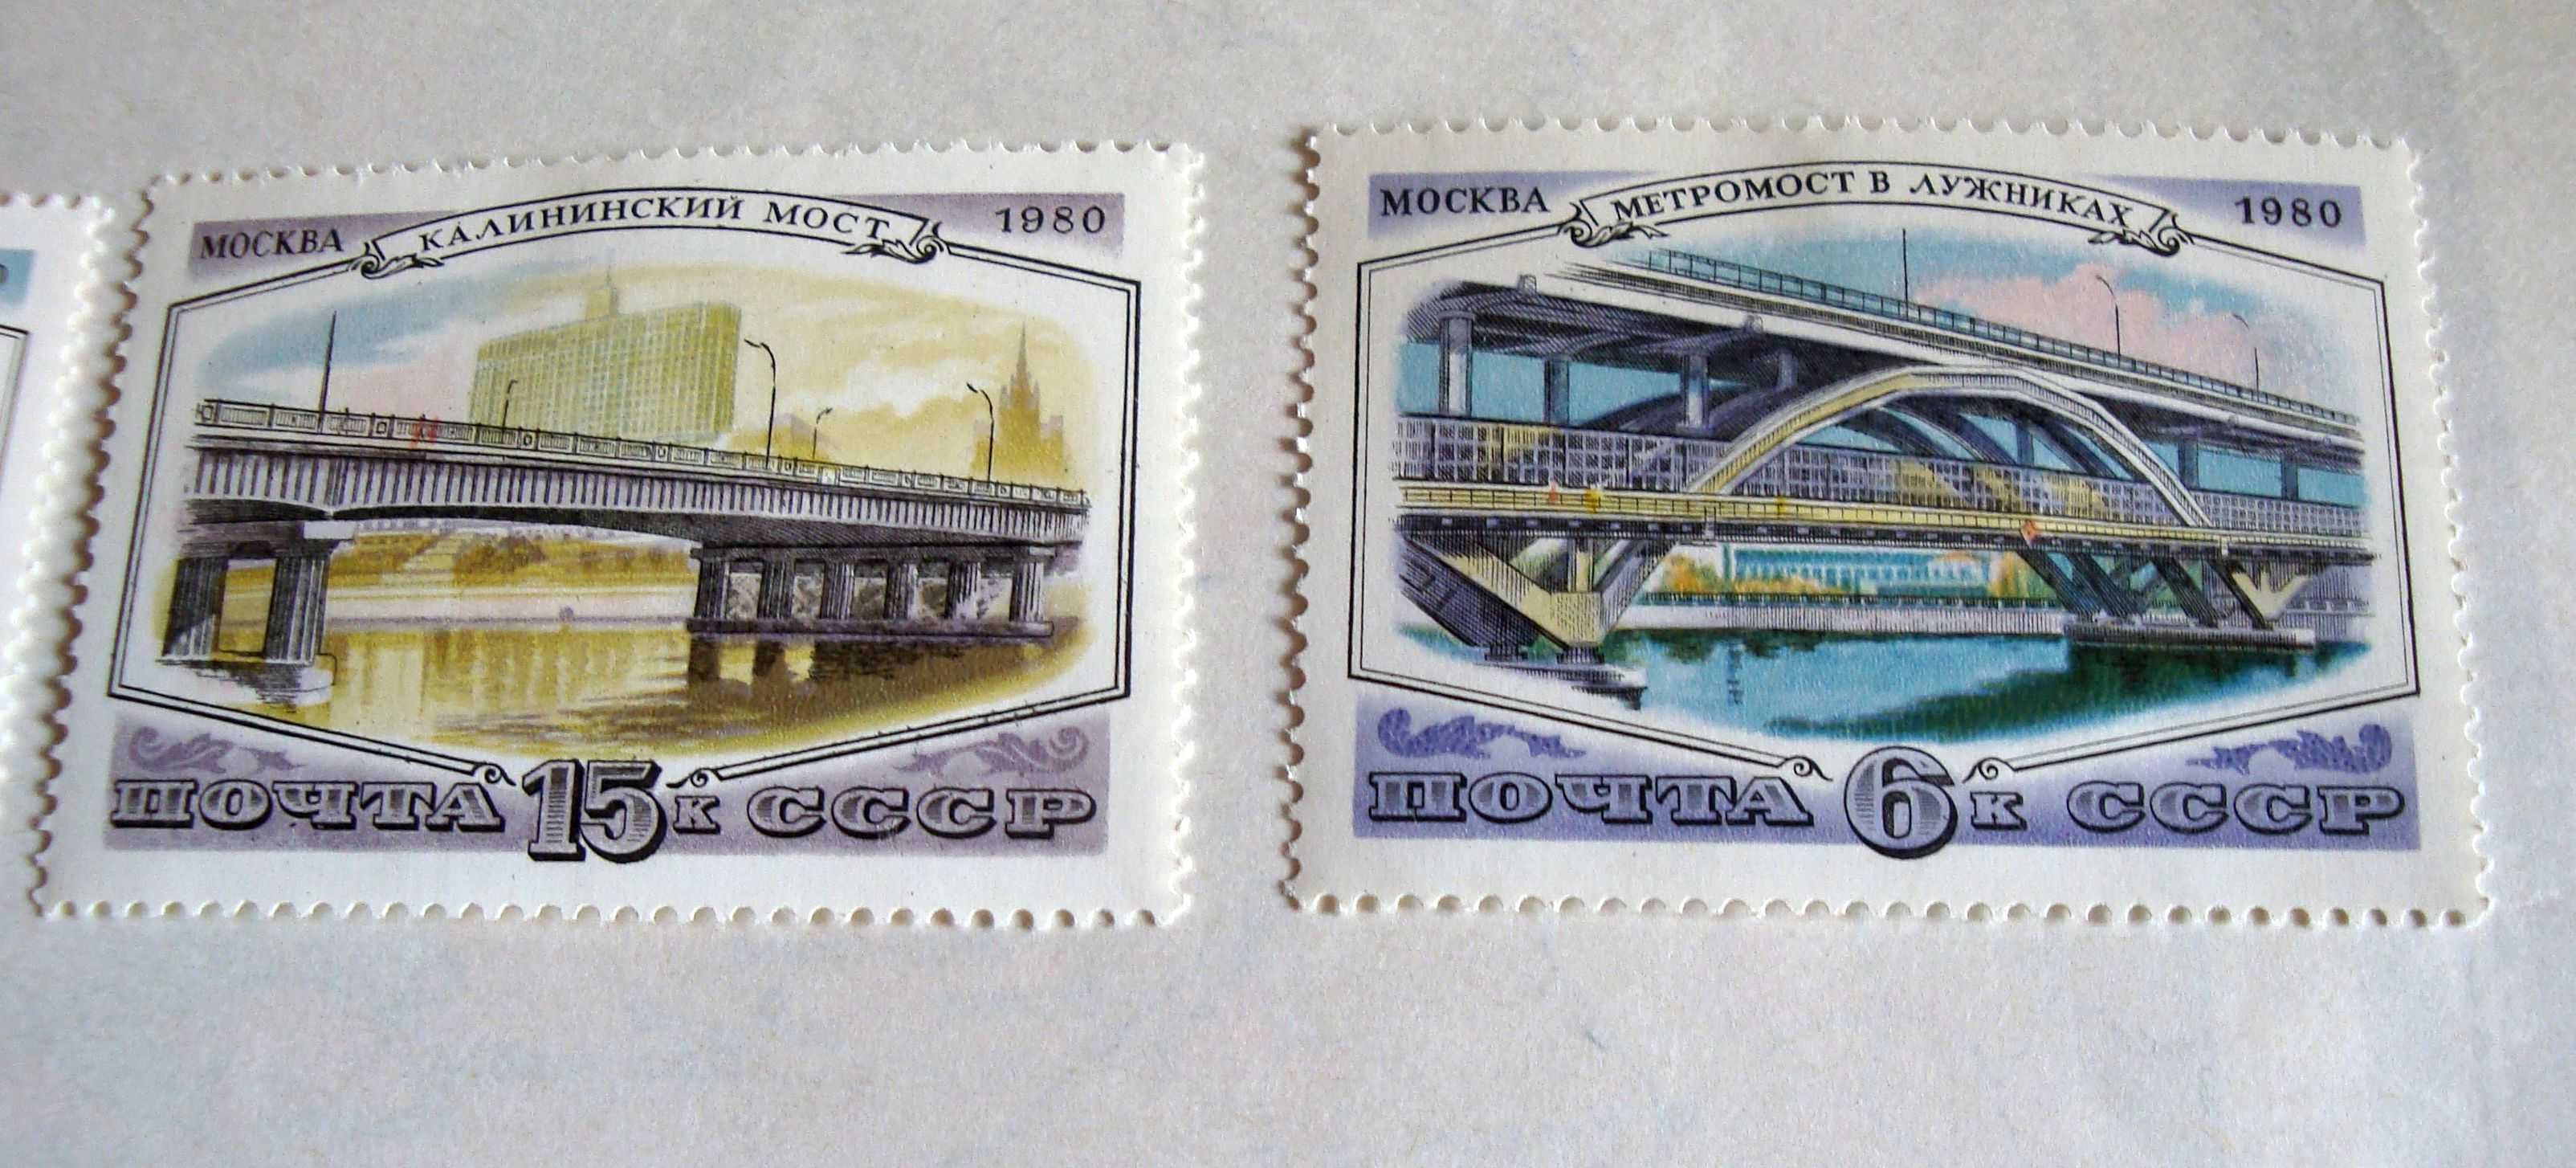 3 почтовые марки – серия  «МОСТЫ М» сов 1980